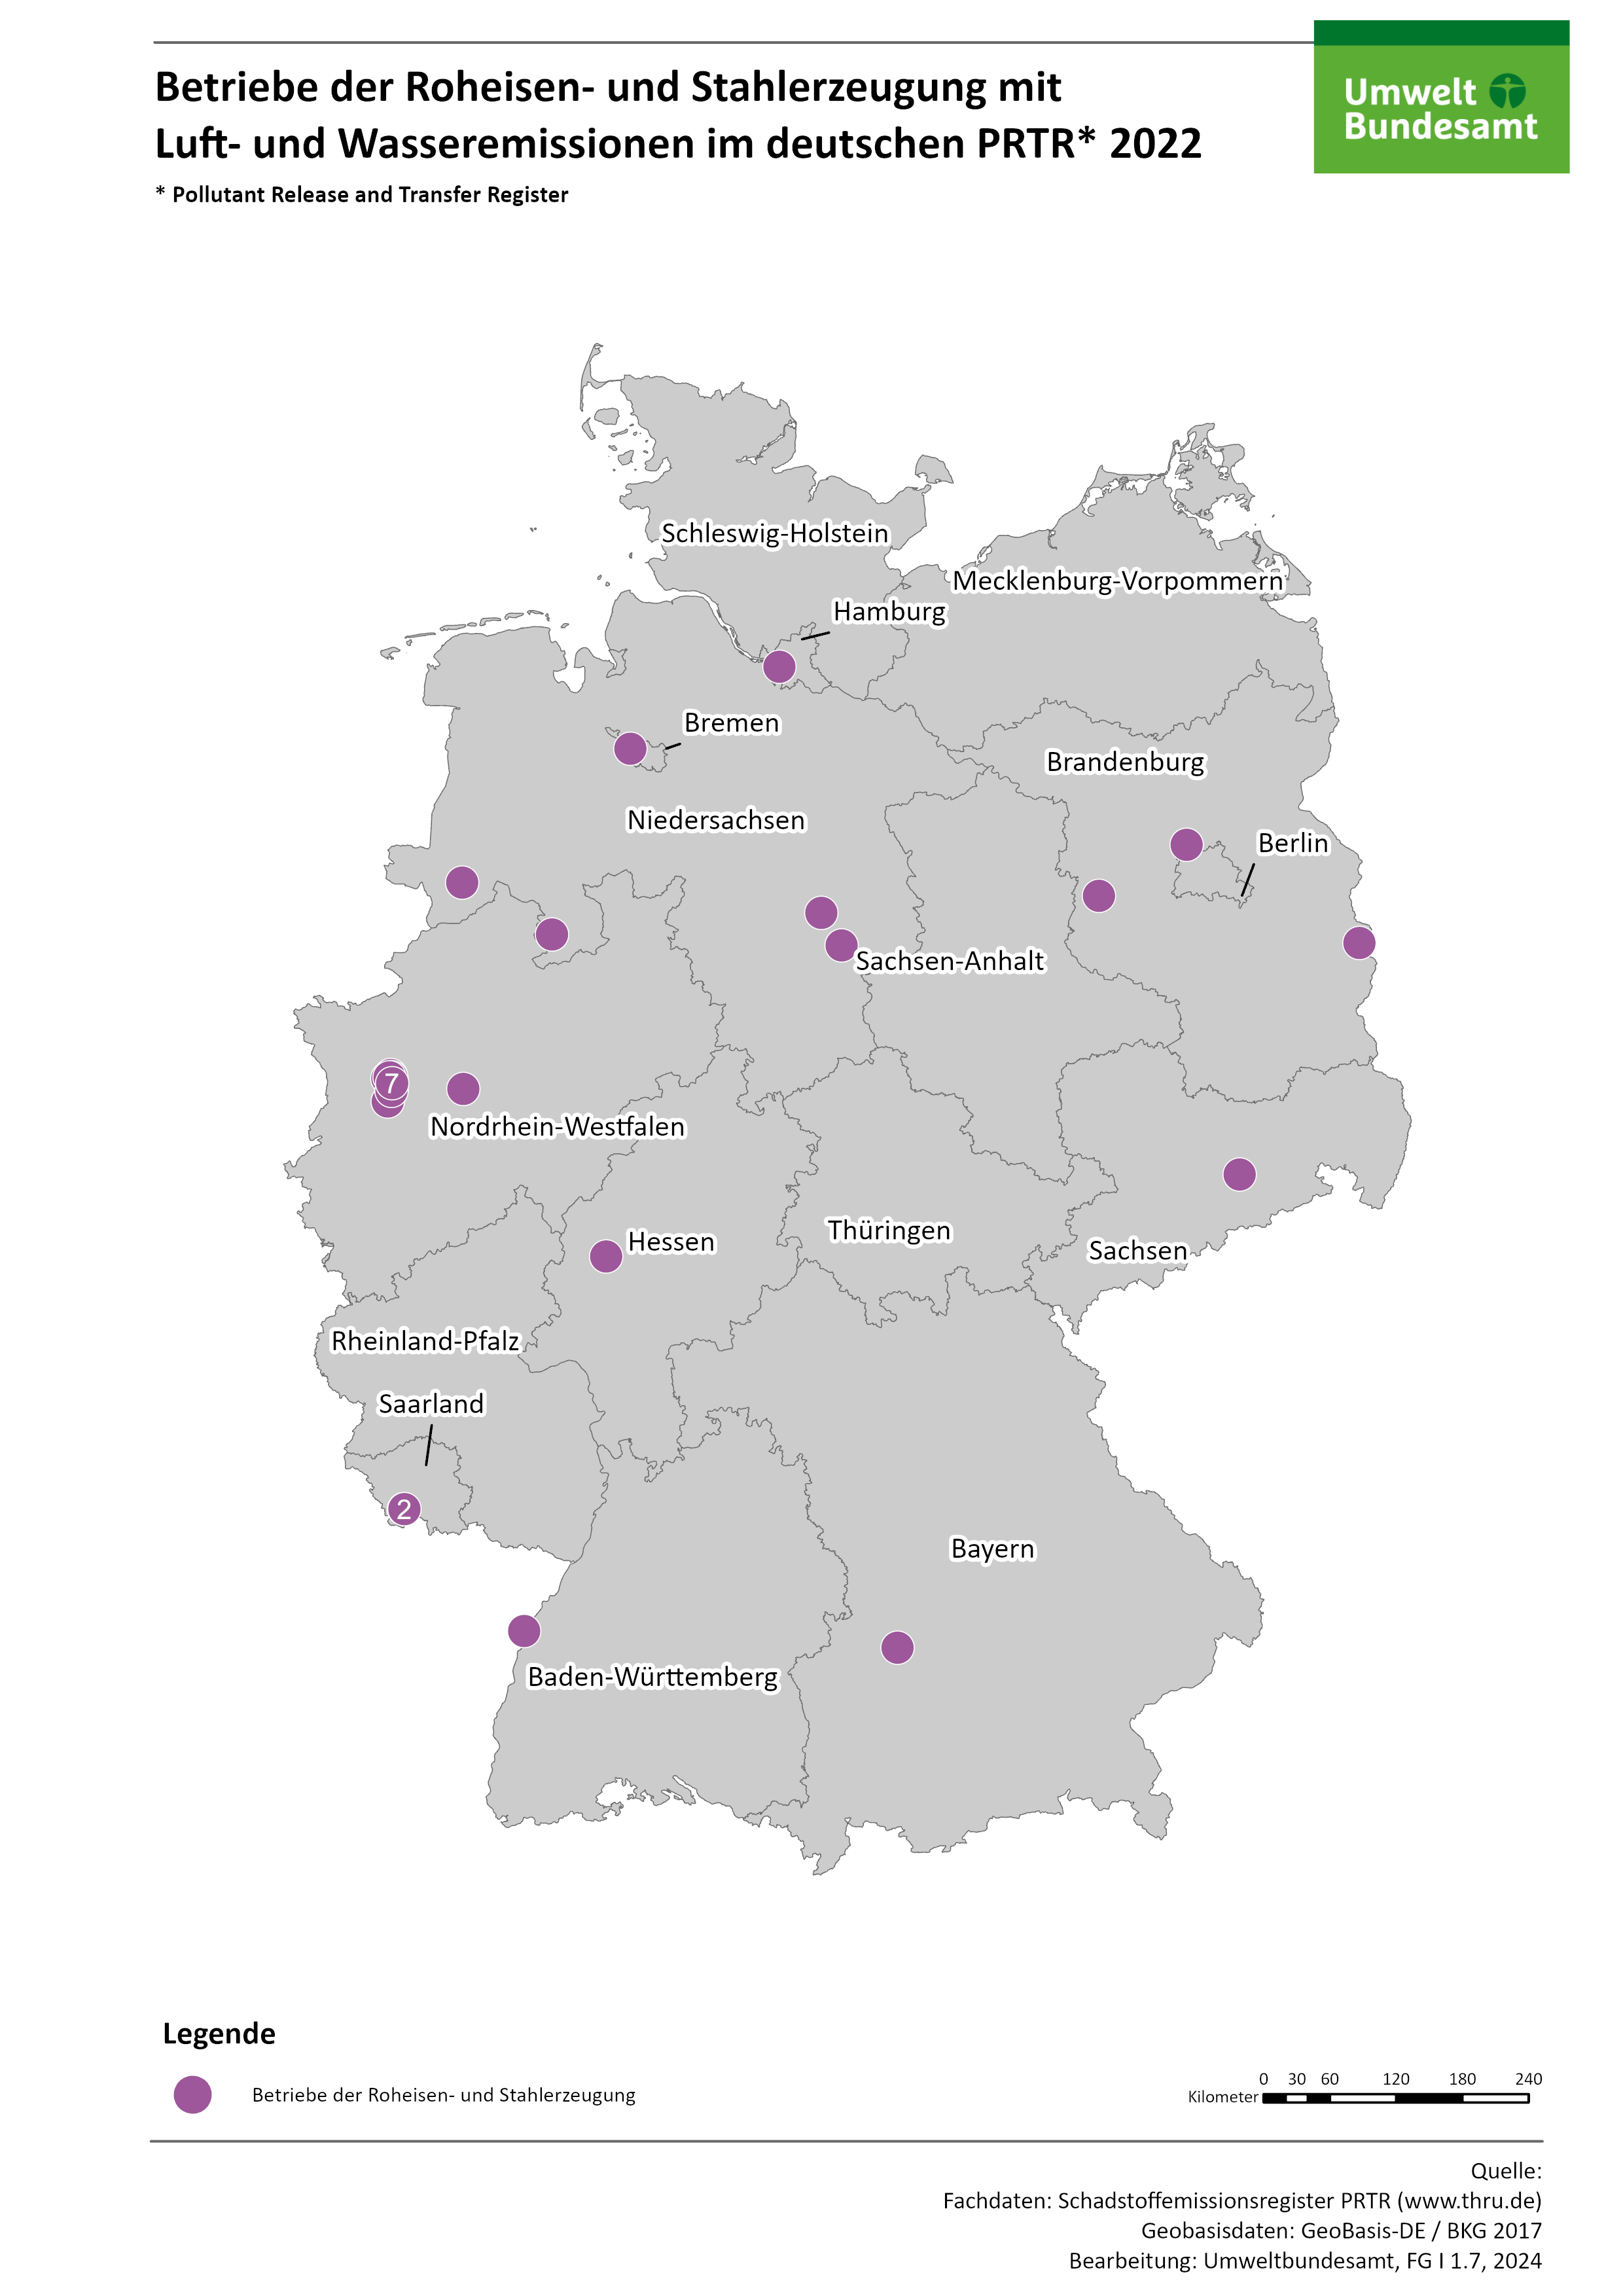 Die Karte zeigt die räumliche Verteilung der berichtspflichtigen PRTR-Betriebe der Roheisen- und Stahlerzeugung im Jahr 2022. Die meisten dieser Betriebe liegen im Bundesland Nordrhein-Westfalen.